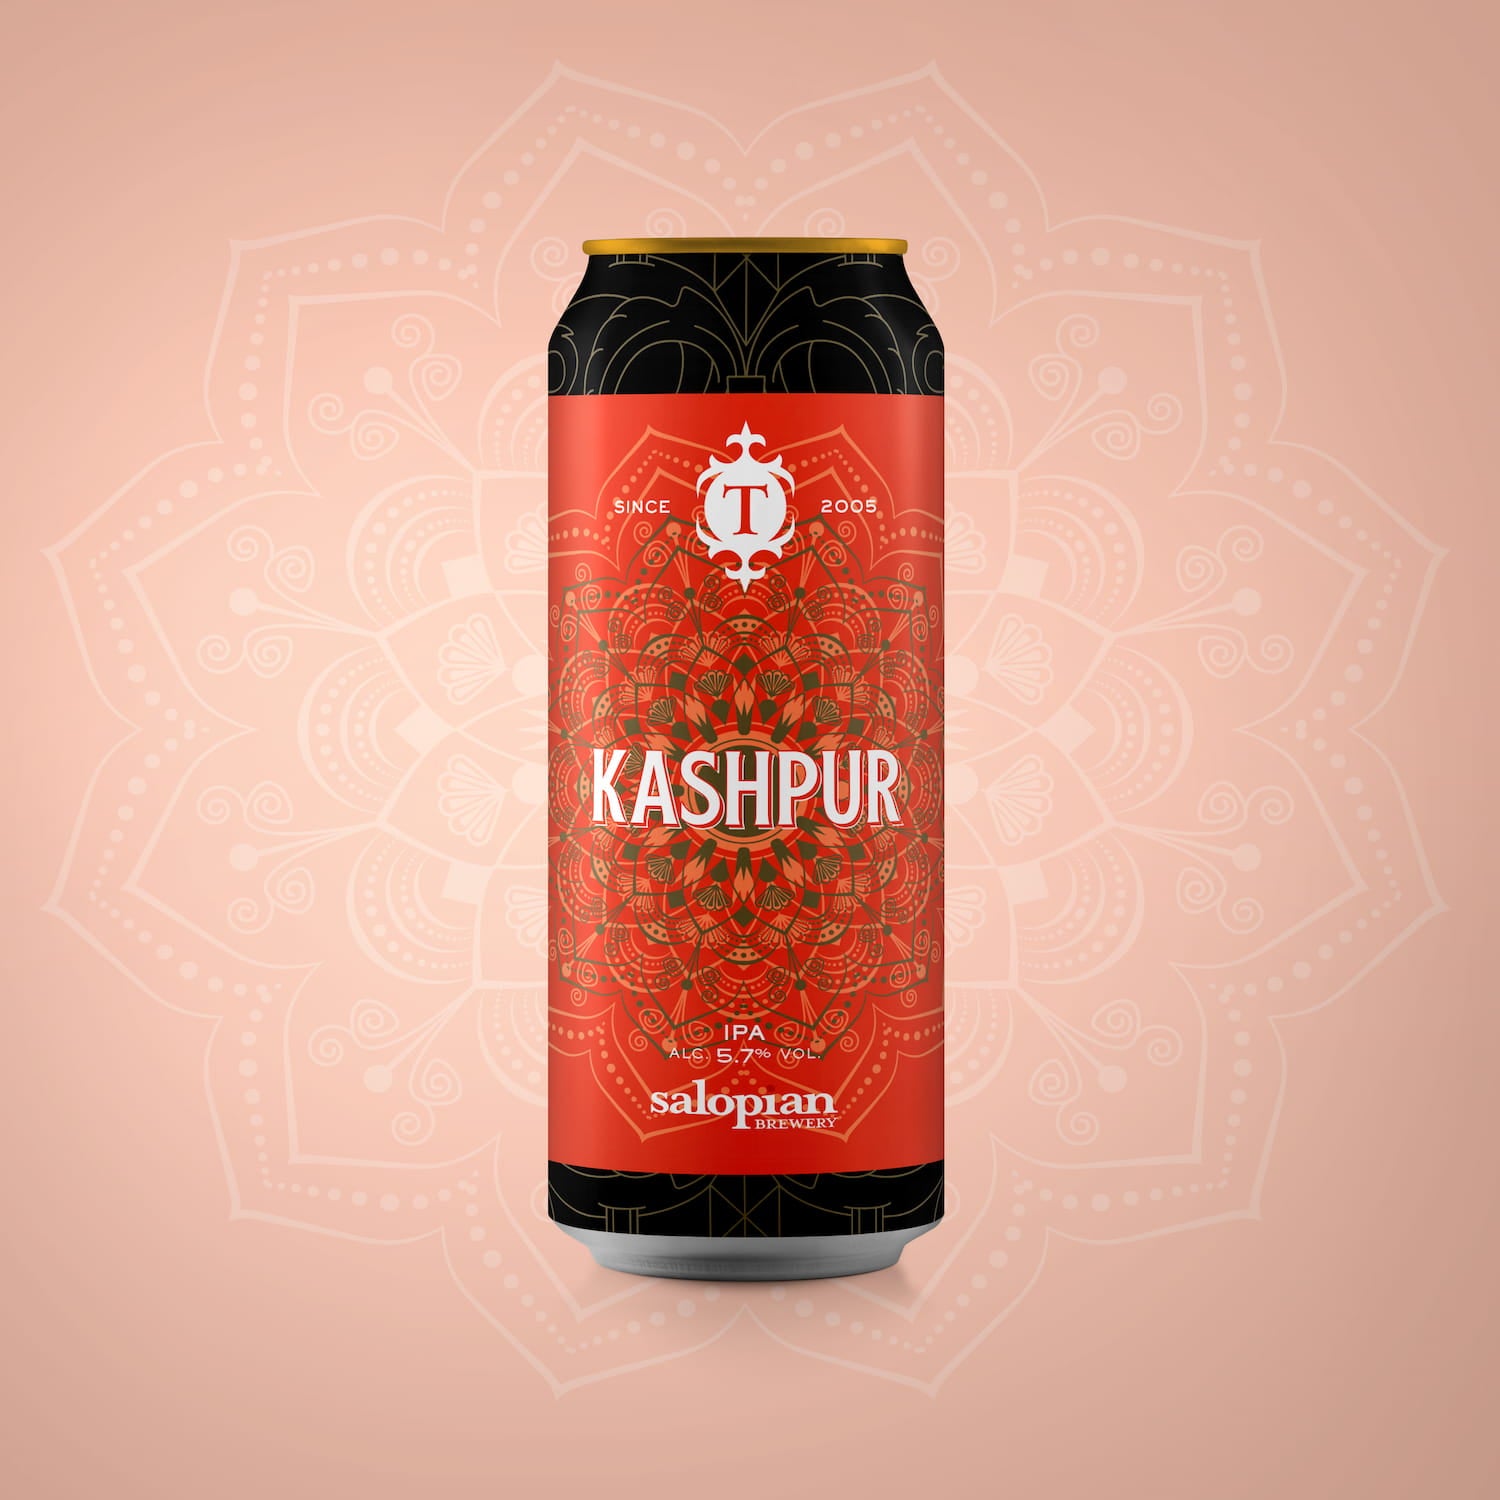 Kashpur, 5.7% IPA Beer - Single Can Thornbridge